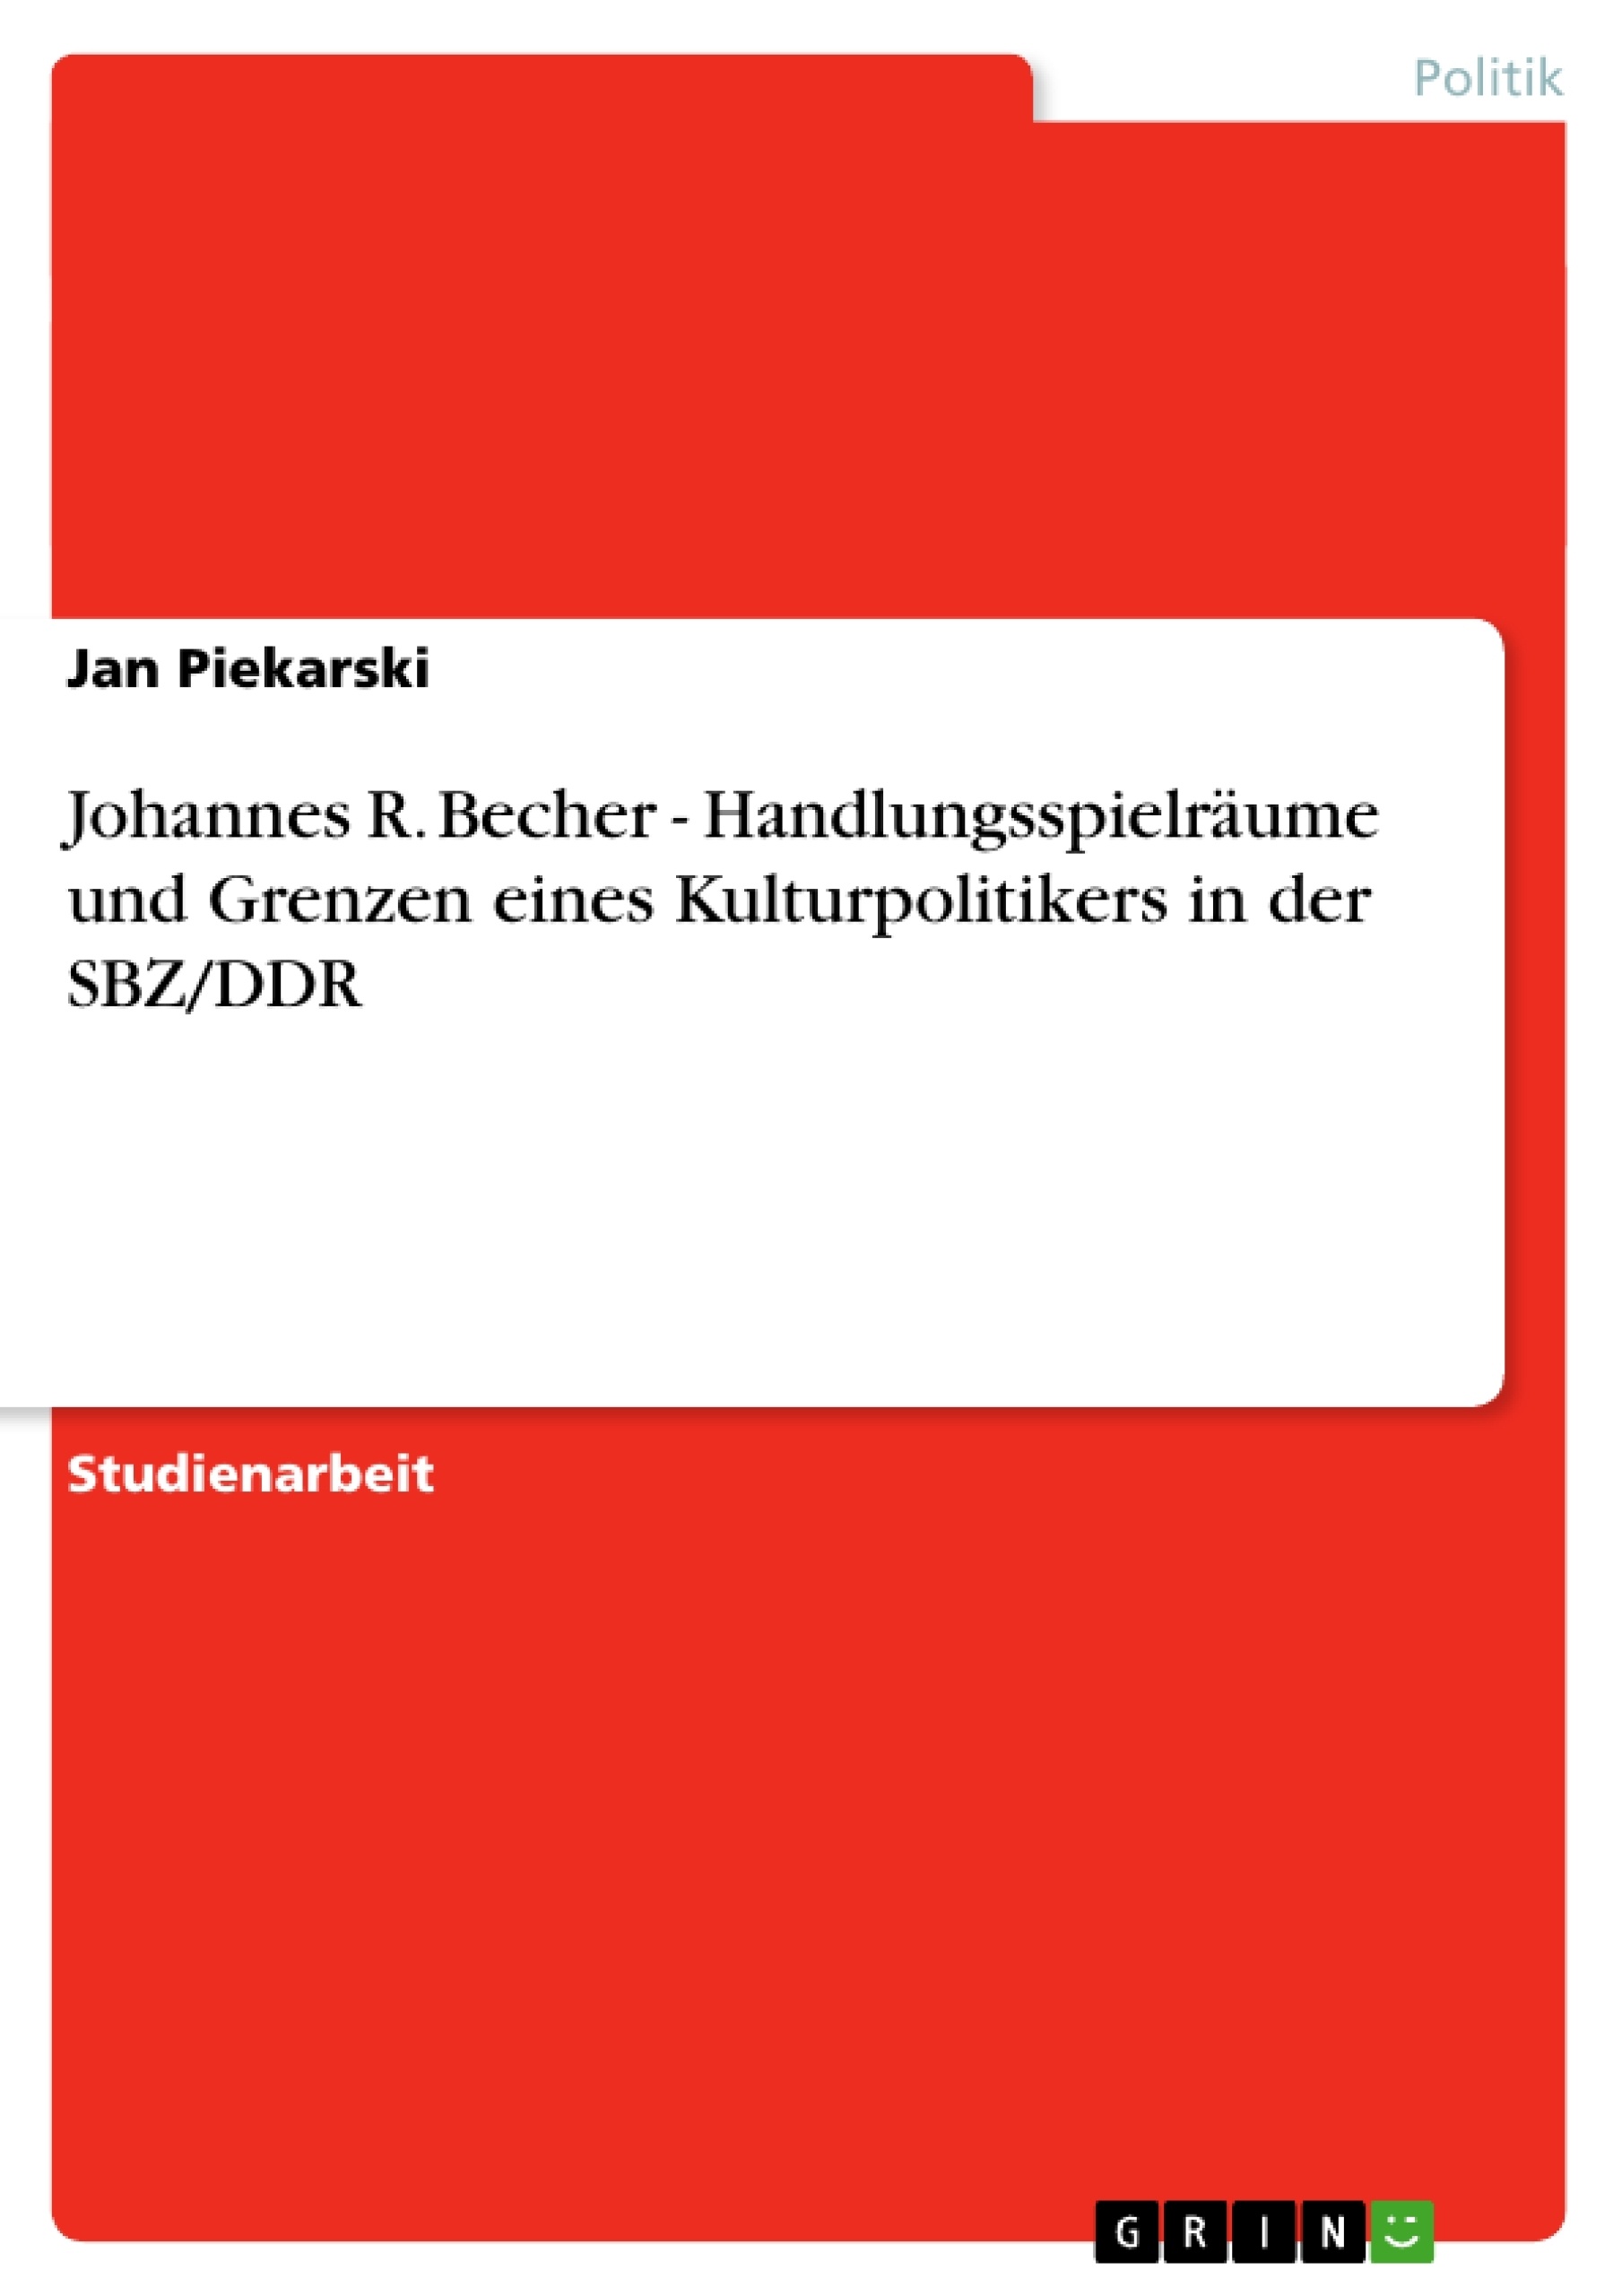 Title: Johannes R. Becher - Handlungsspielräume und Grenzen eines Kulturpolitikers in der SBZ/DDR